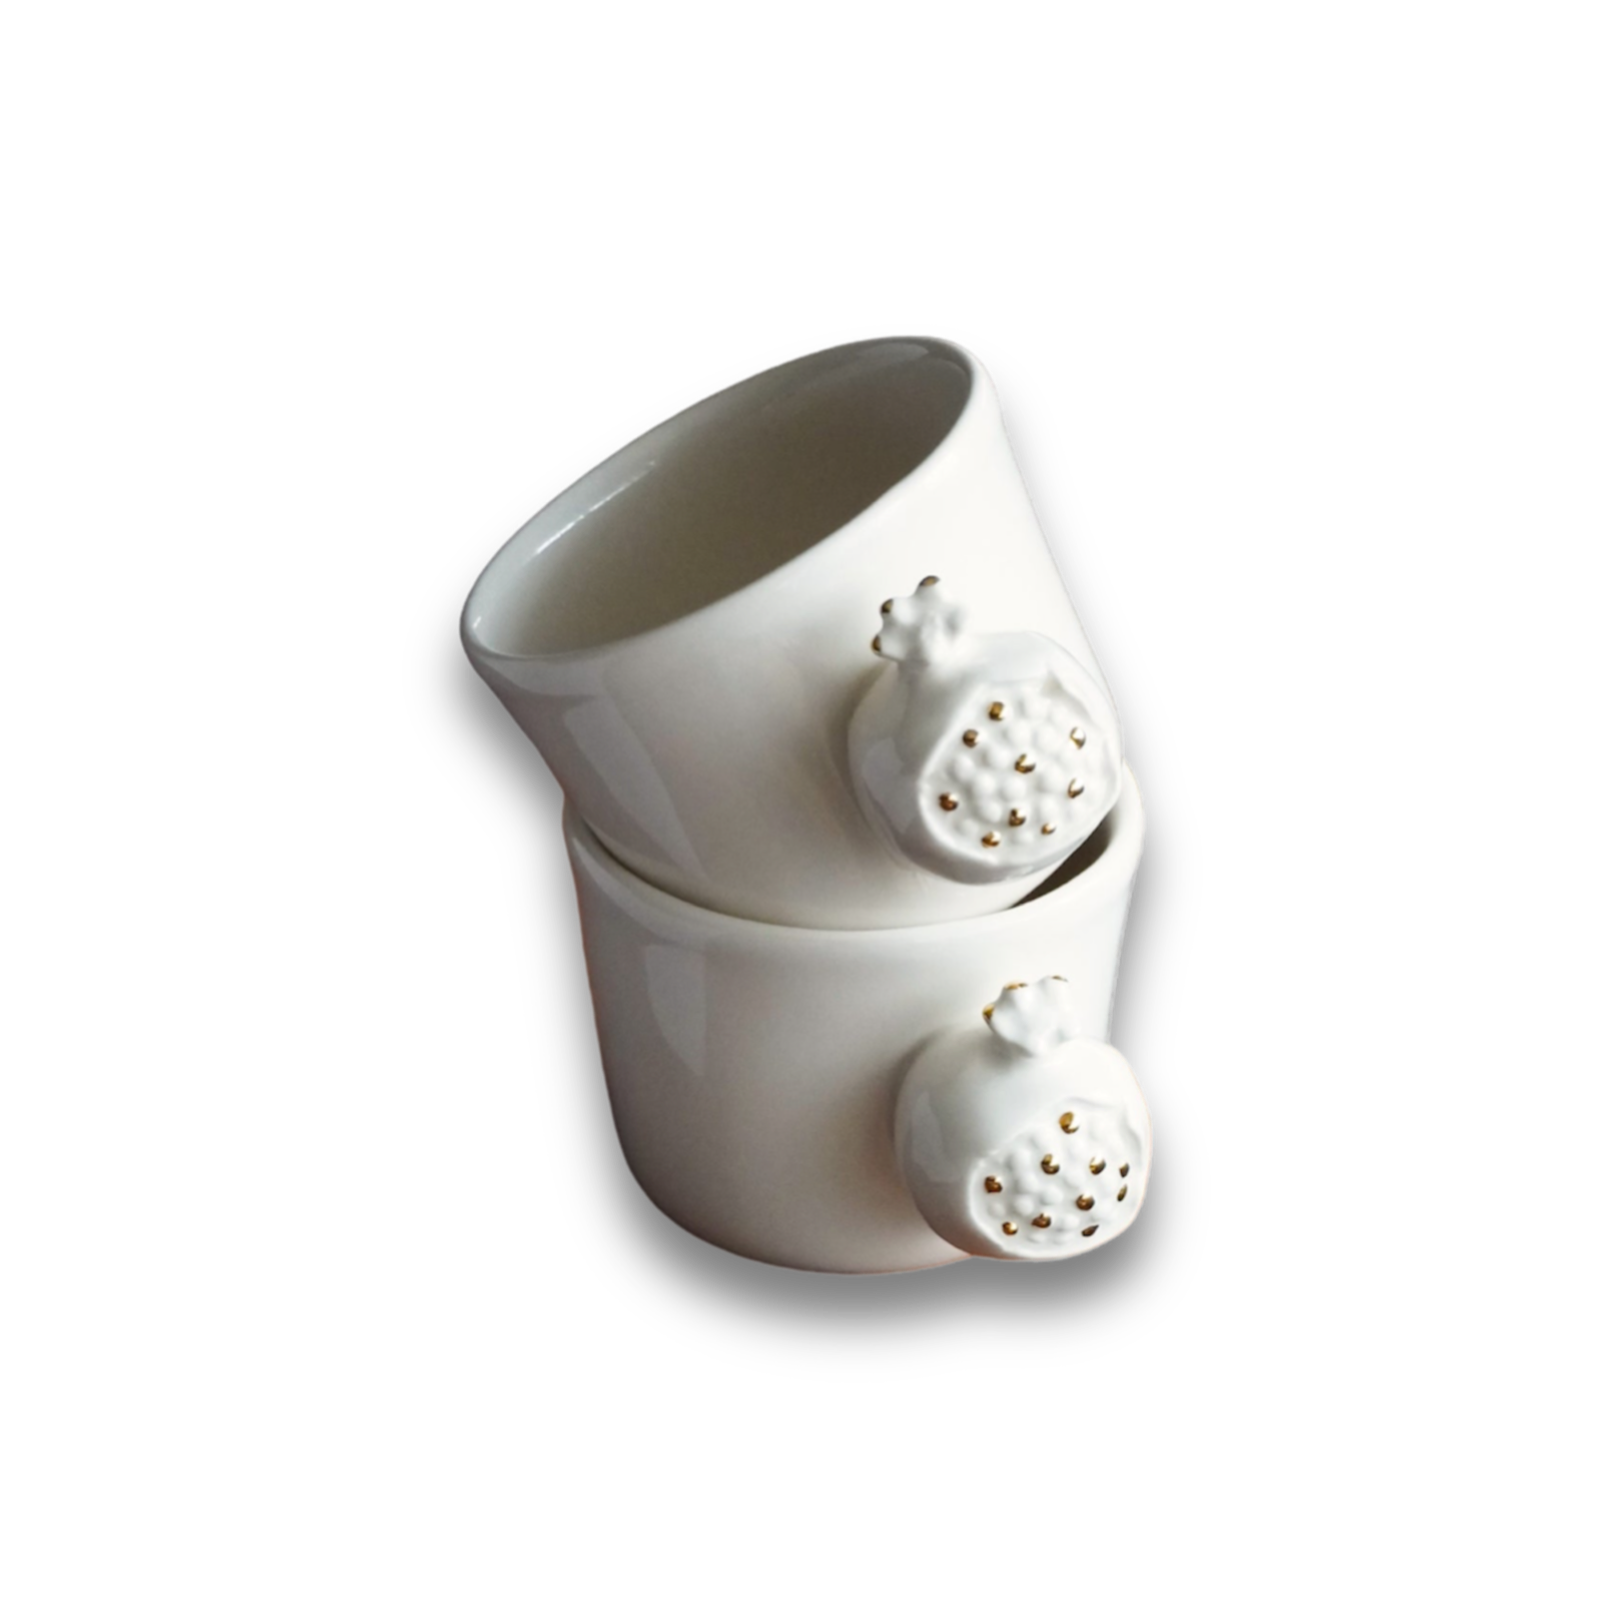 Porcelain mug POMEGRANATE - ZLATNAporcelain